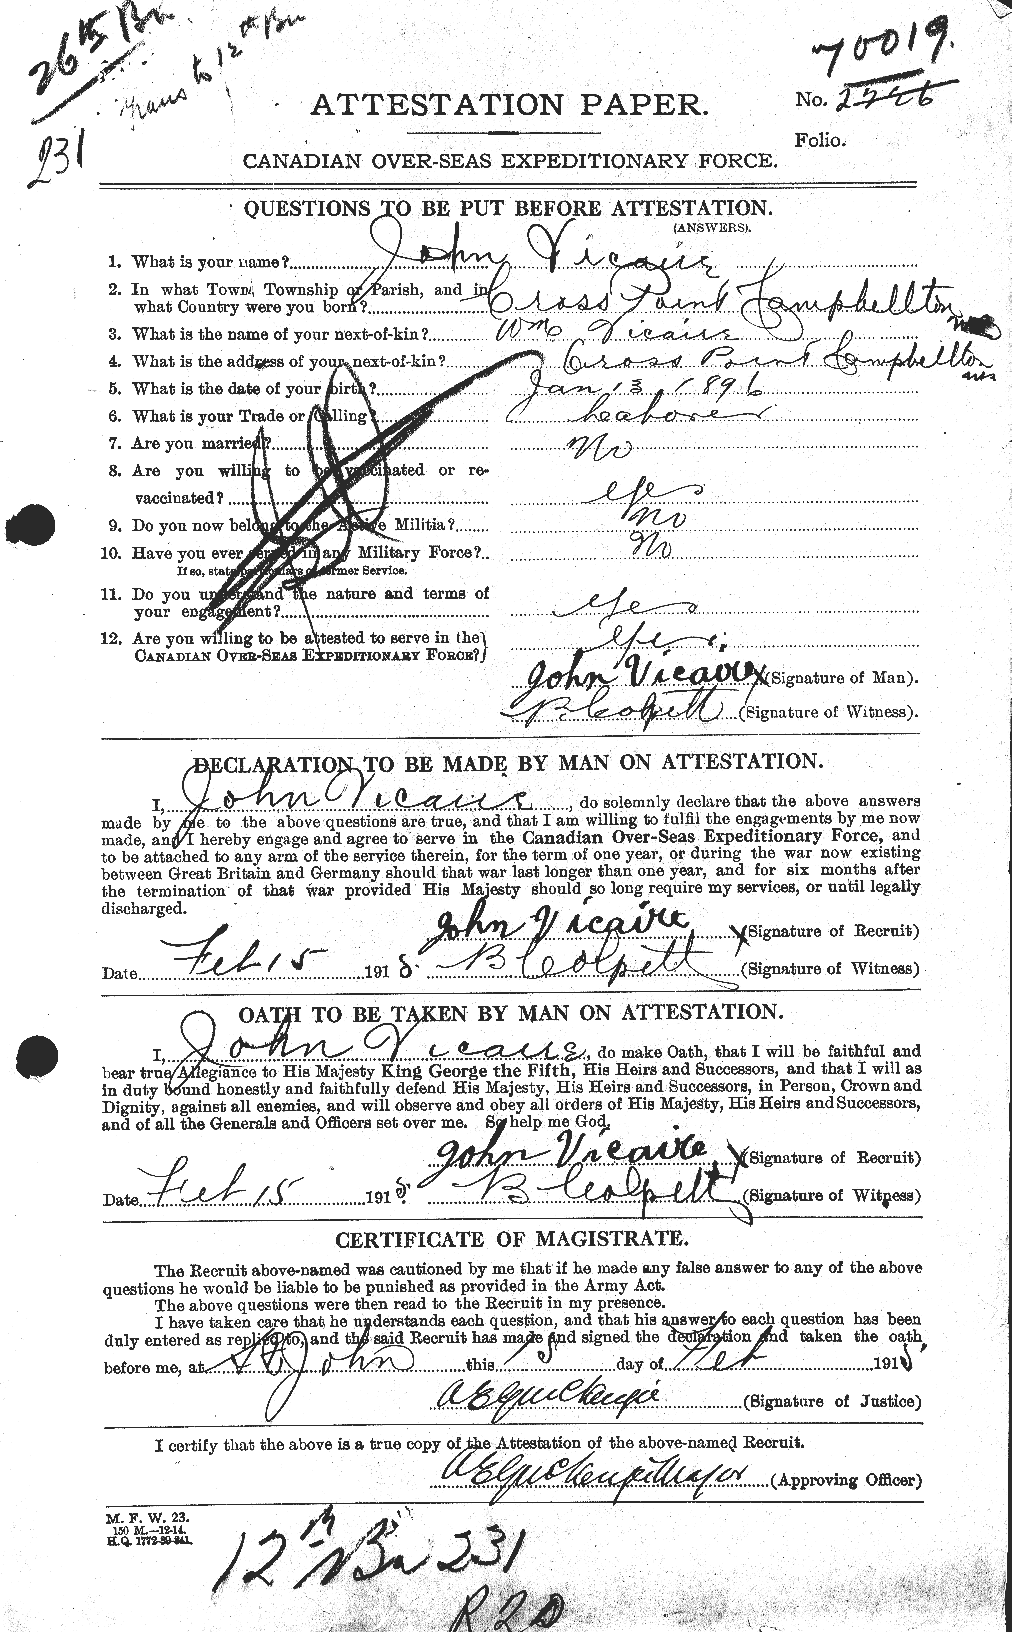 Dossiers du Personnel de la Première Guerre mondiale - CEC 652129a